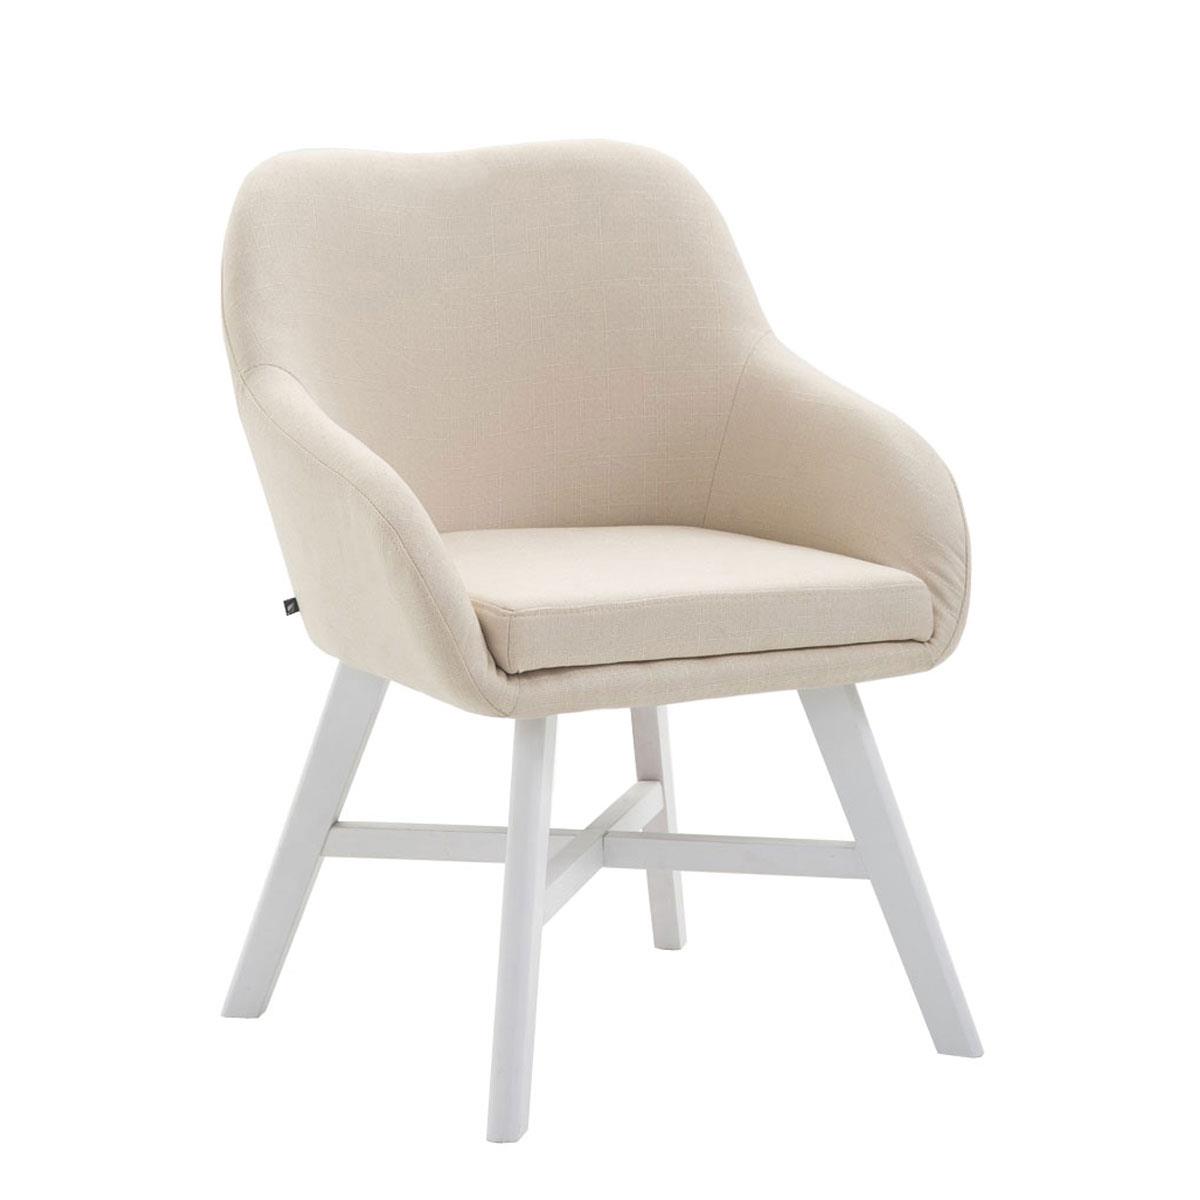 Cadeira de Visita KETEL, Exclusiva, Estructura em Madeira Branca e Tecido, Em Creme